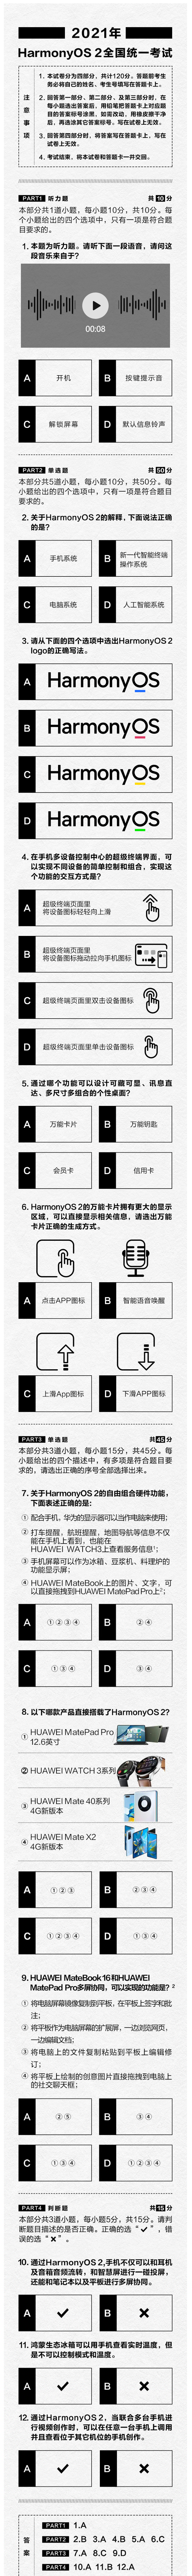 HarmonyOS 2 exam papers -1